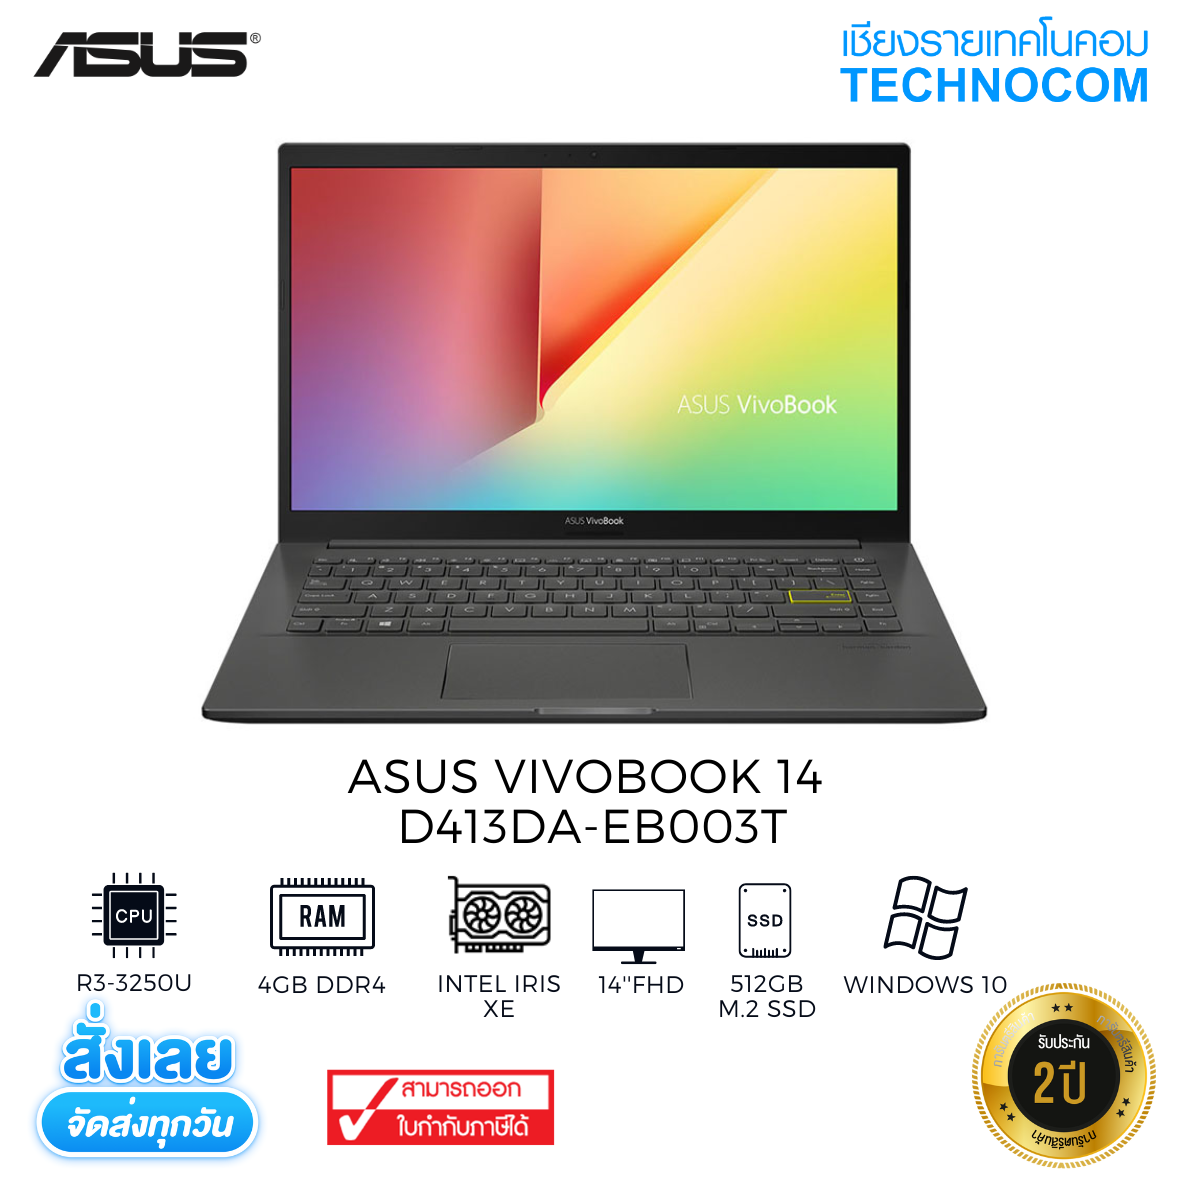 Asus Vivobook 14 D413DA-EB003T